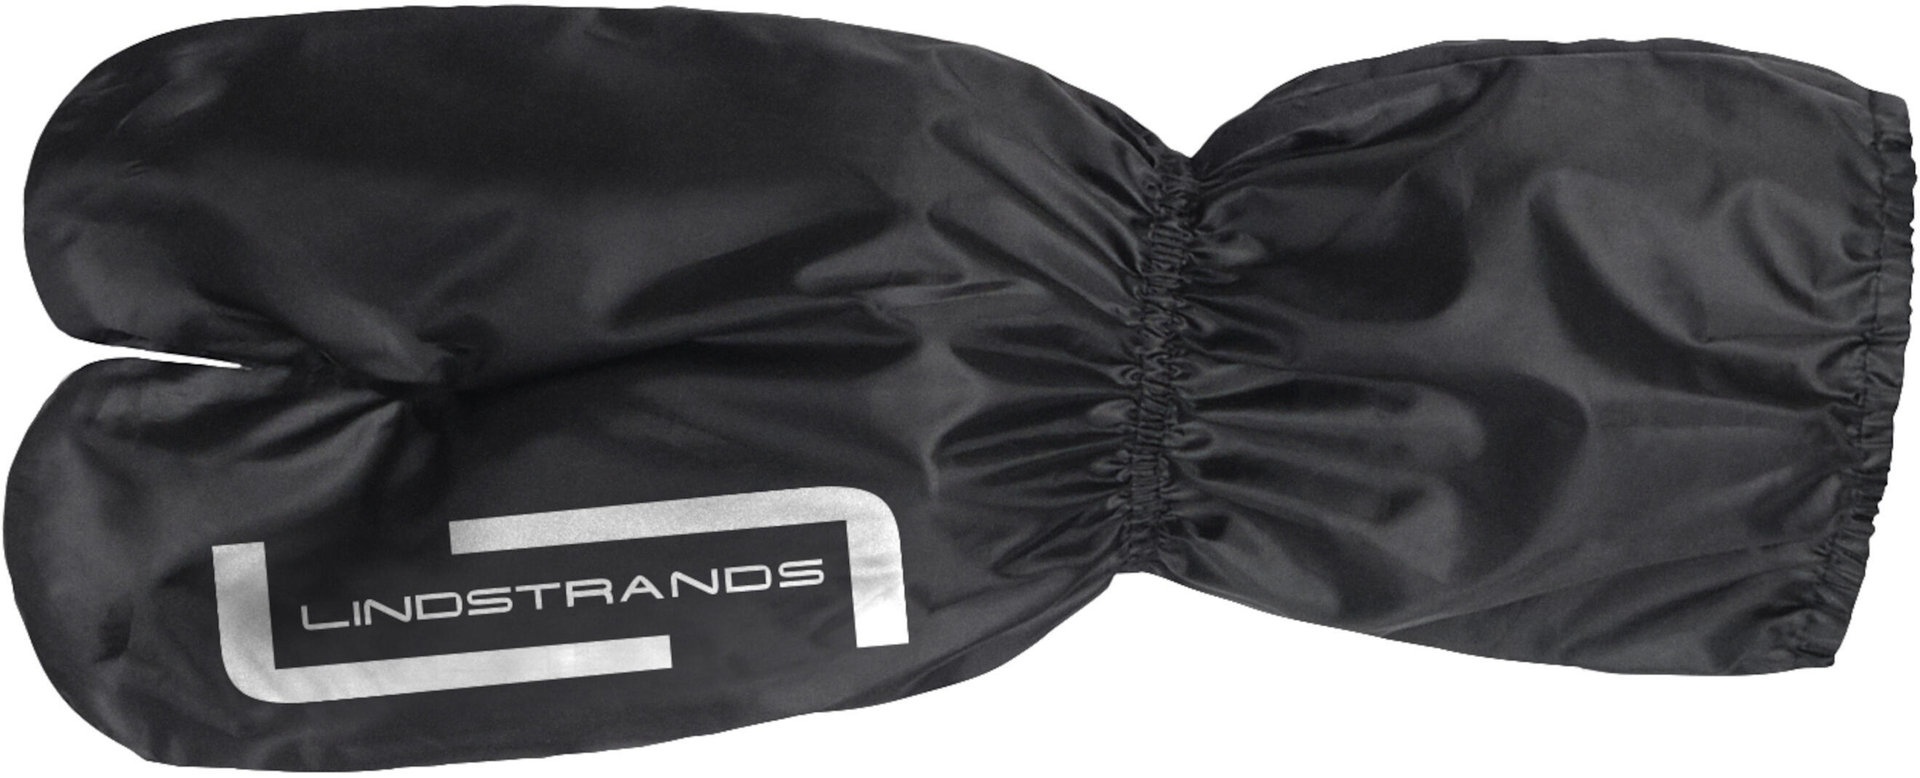 Lindstrands RC Regenhandschuhe, schwarz, Größe L